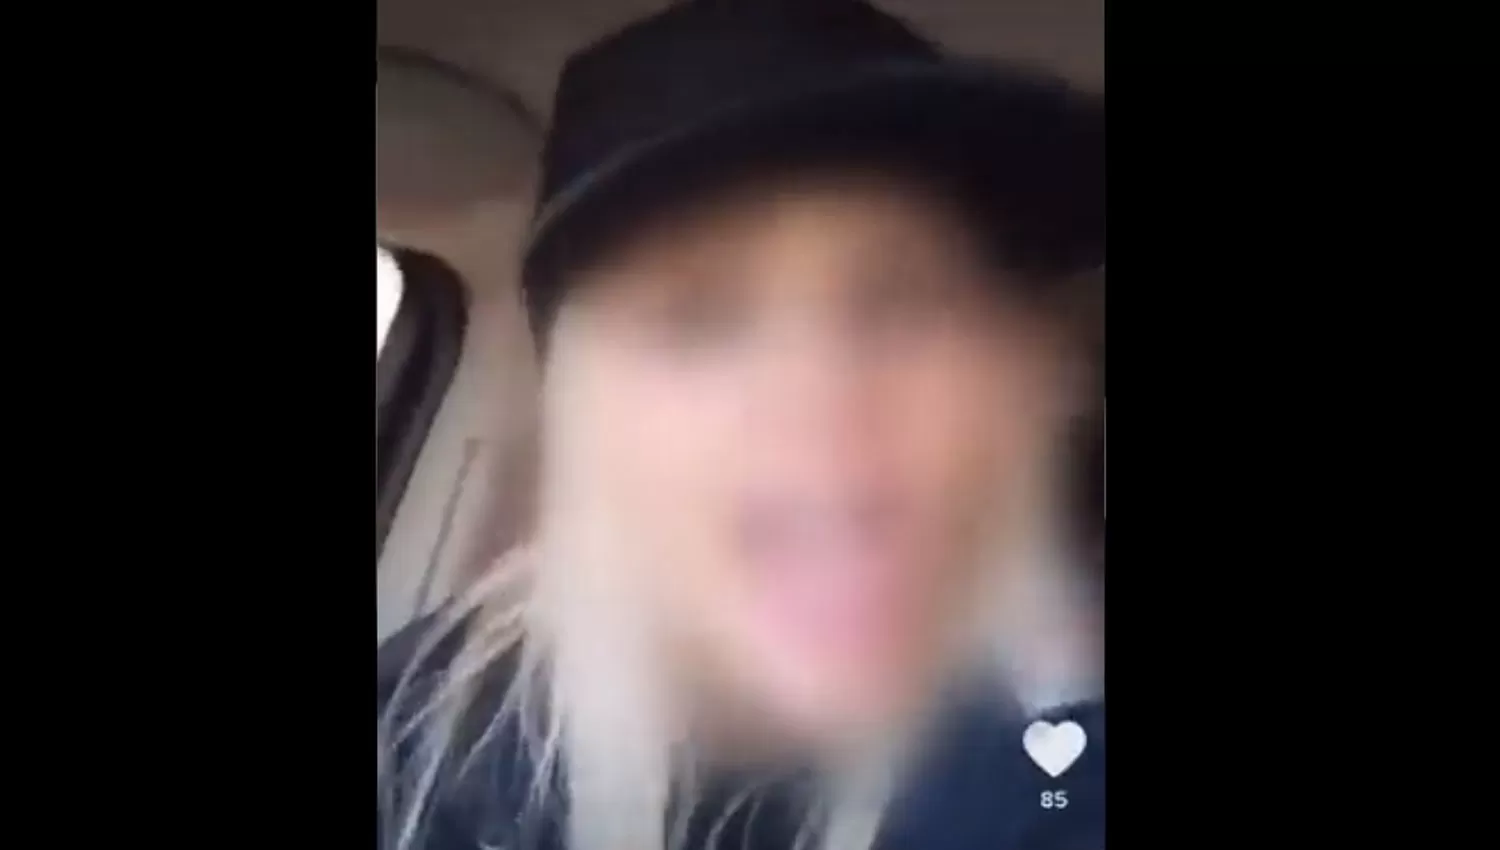 AL VOLANTE. La mujer denunciada grabó videos que luego compartió en las redes sociales.